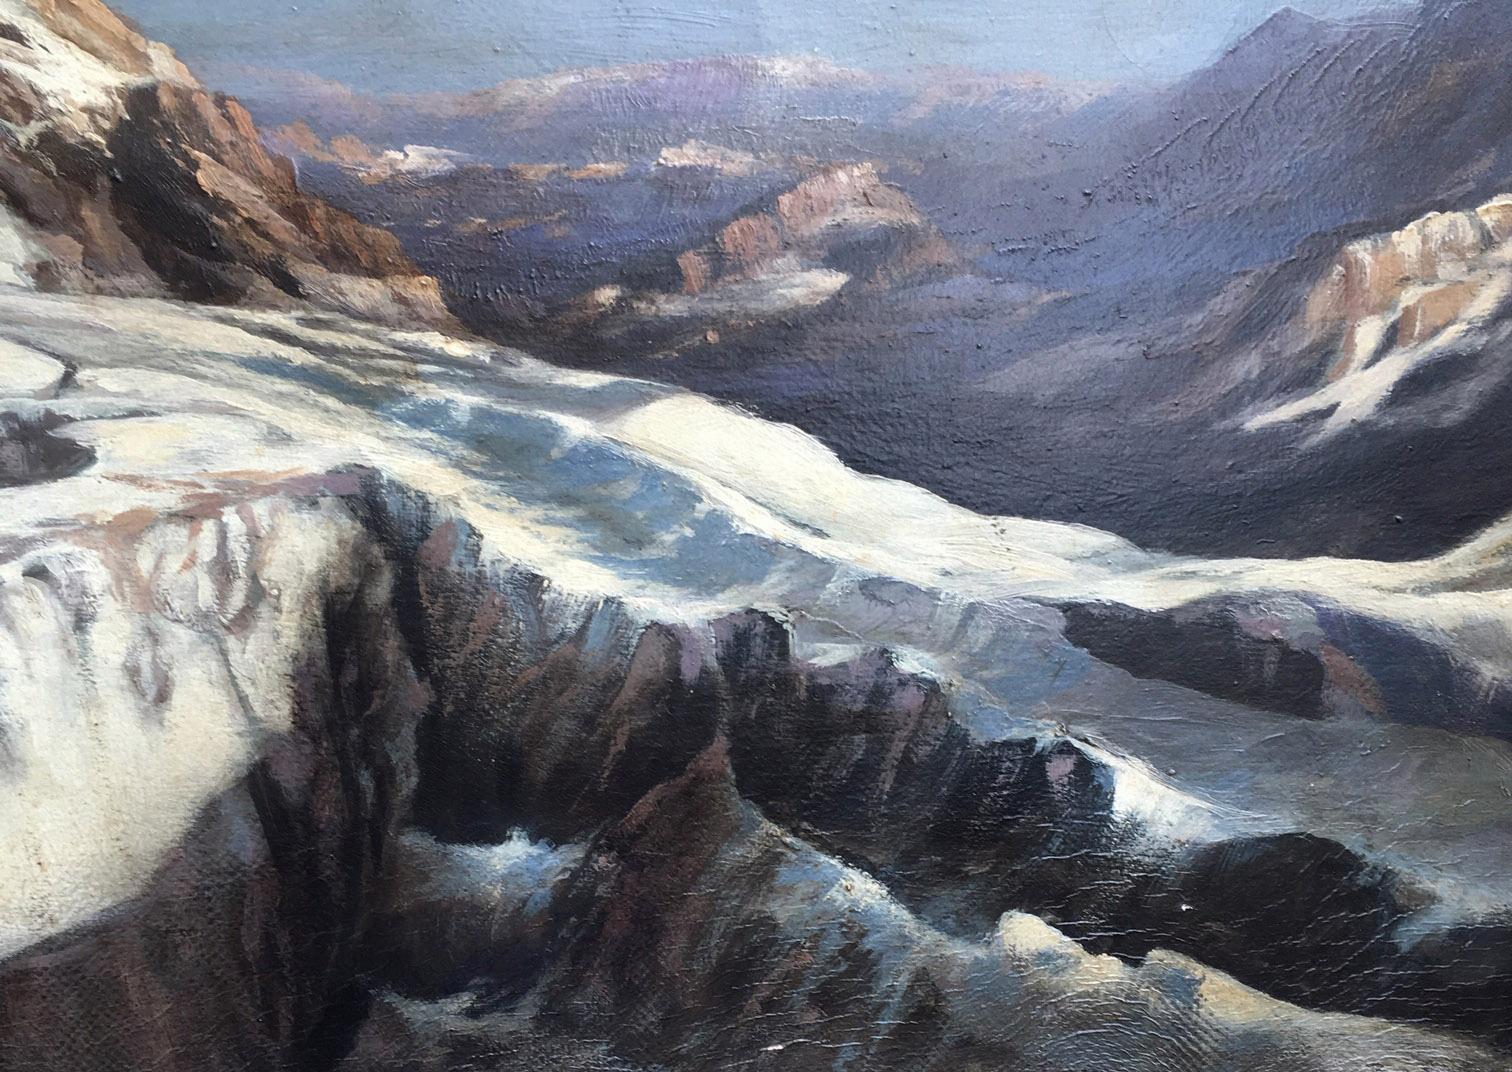 Paysage d'hiver - Huile sur toile cm. 60x120 par Paolo De Robertis, Italie 2002.  

Belle huile sur toile inspirée de l'œuvre 